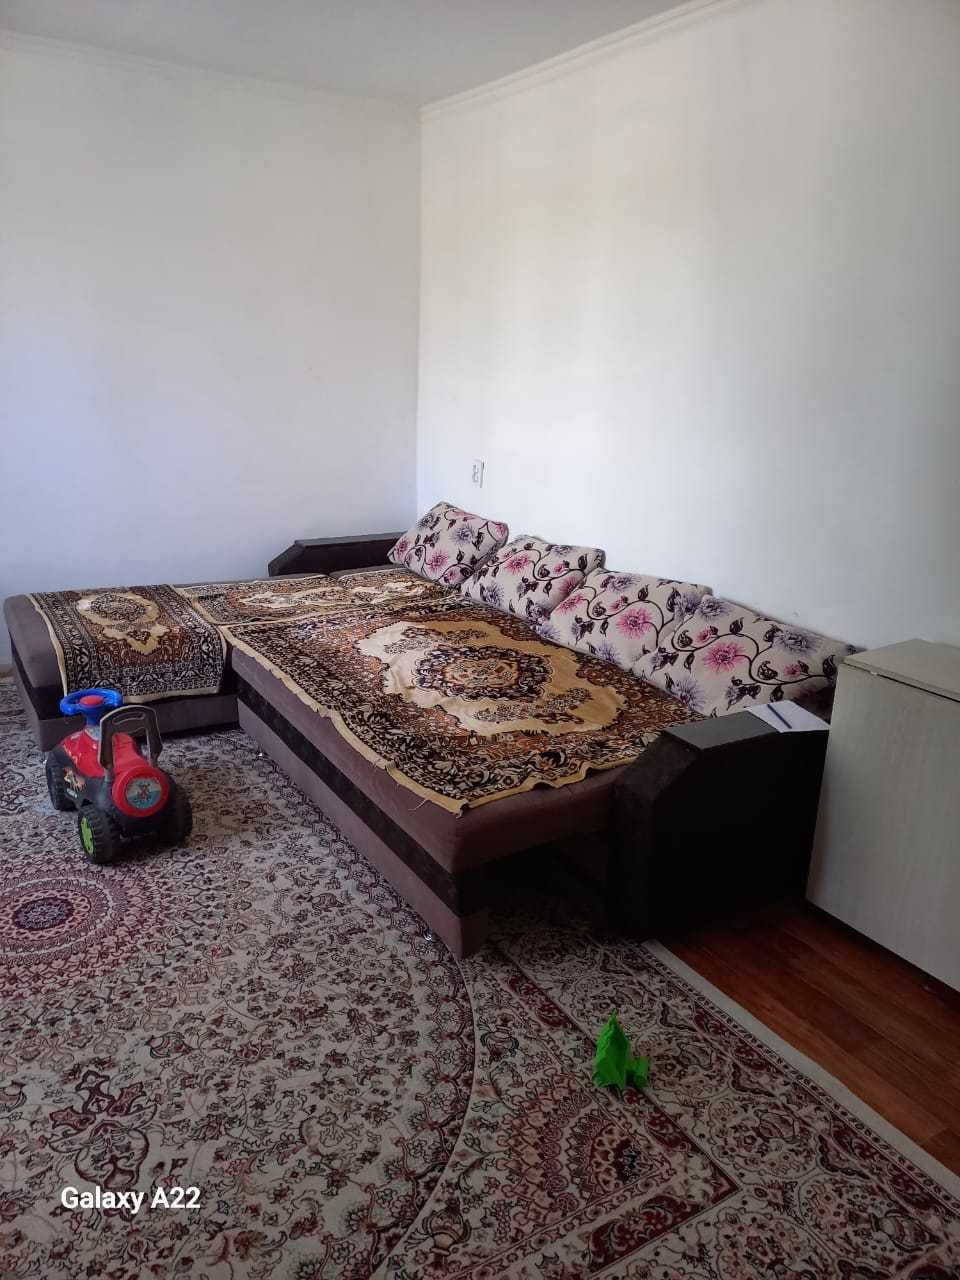 продается 2-х комнатная квартира в Карабулаке